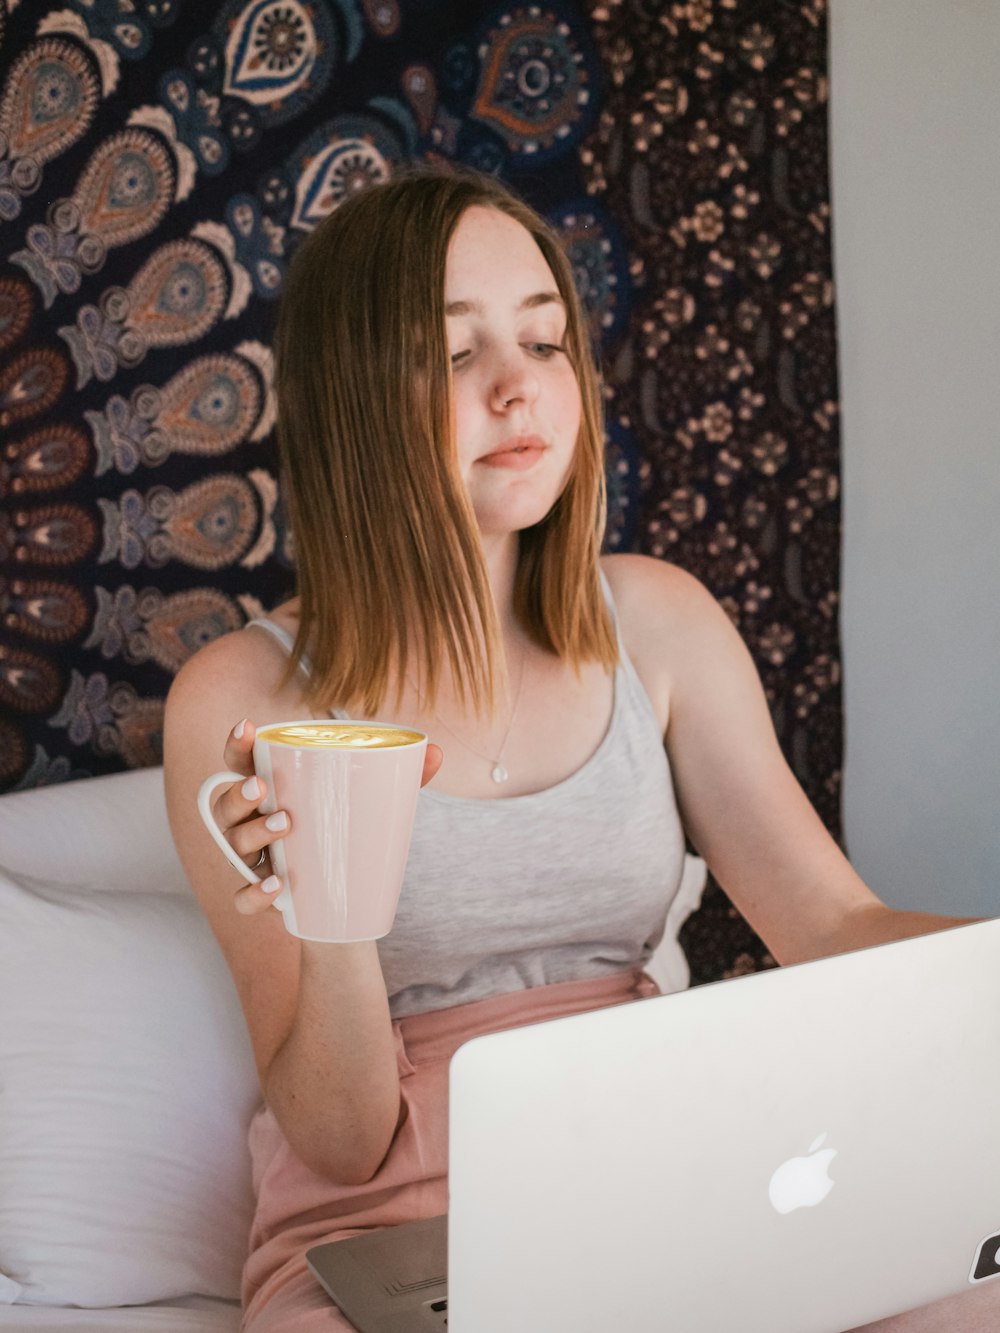 Frau benutzt MacBook und hält Tasse, während sie auf dem Bett sitzt